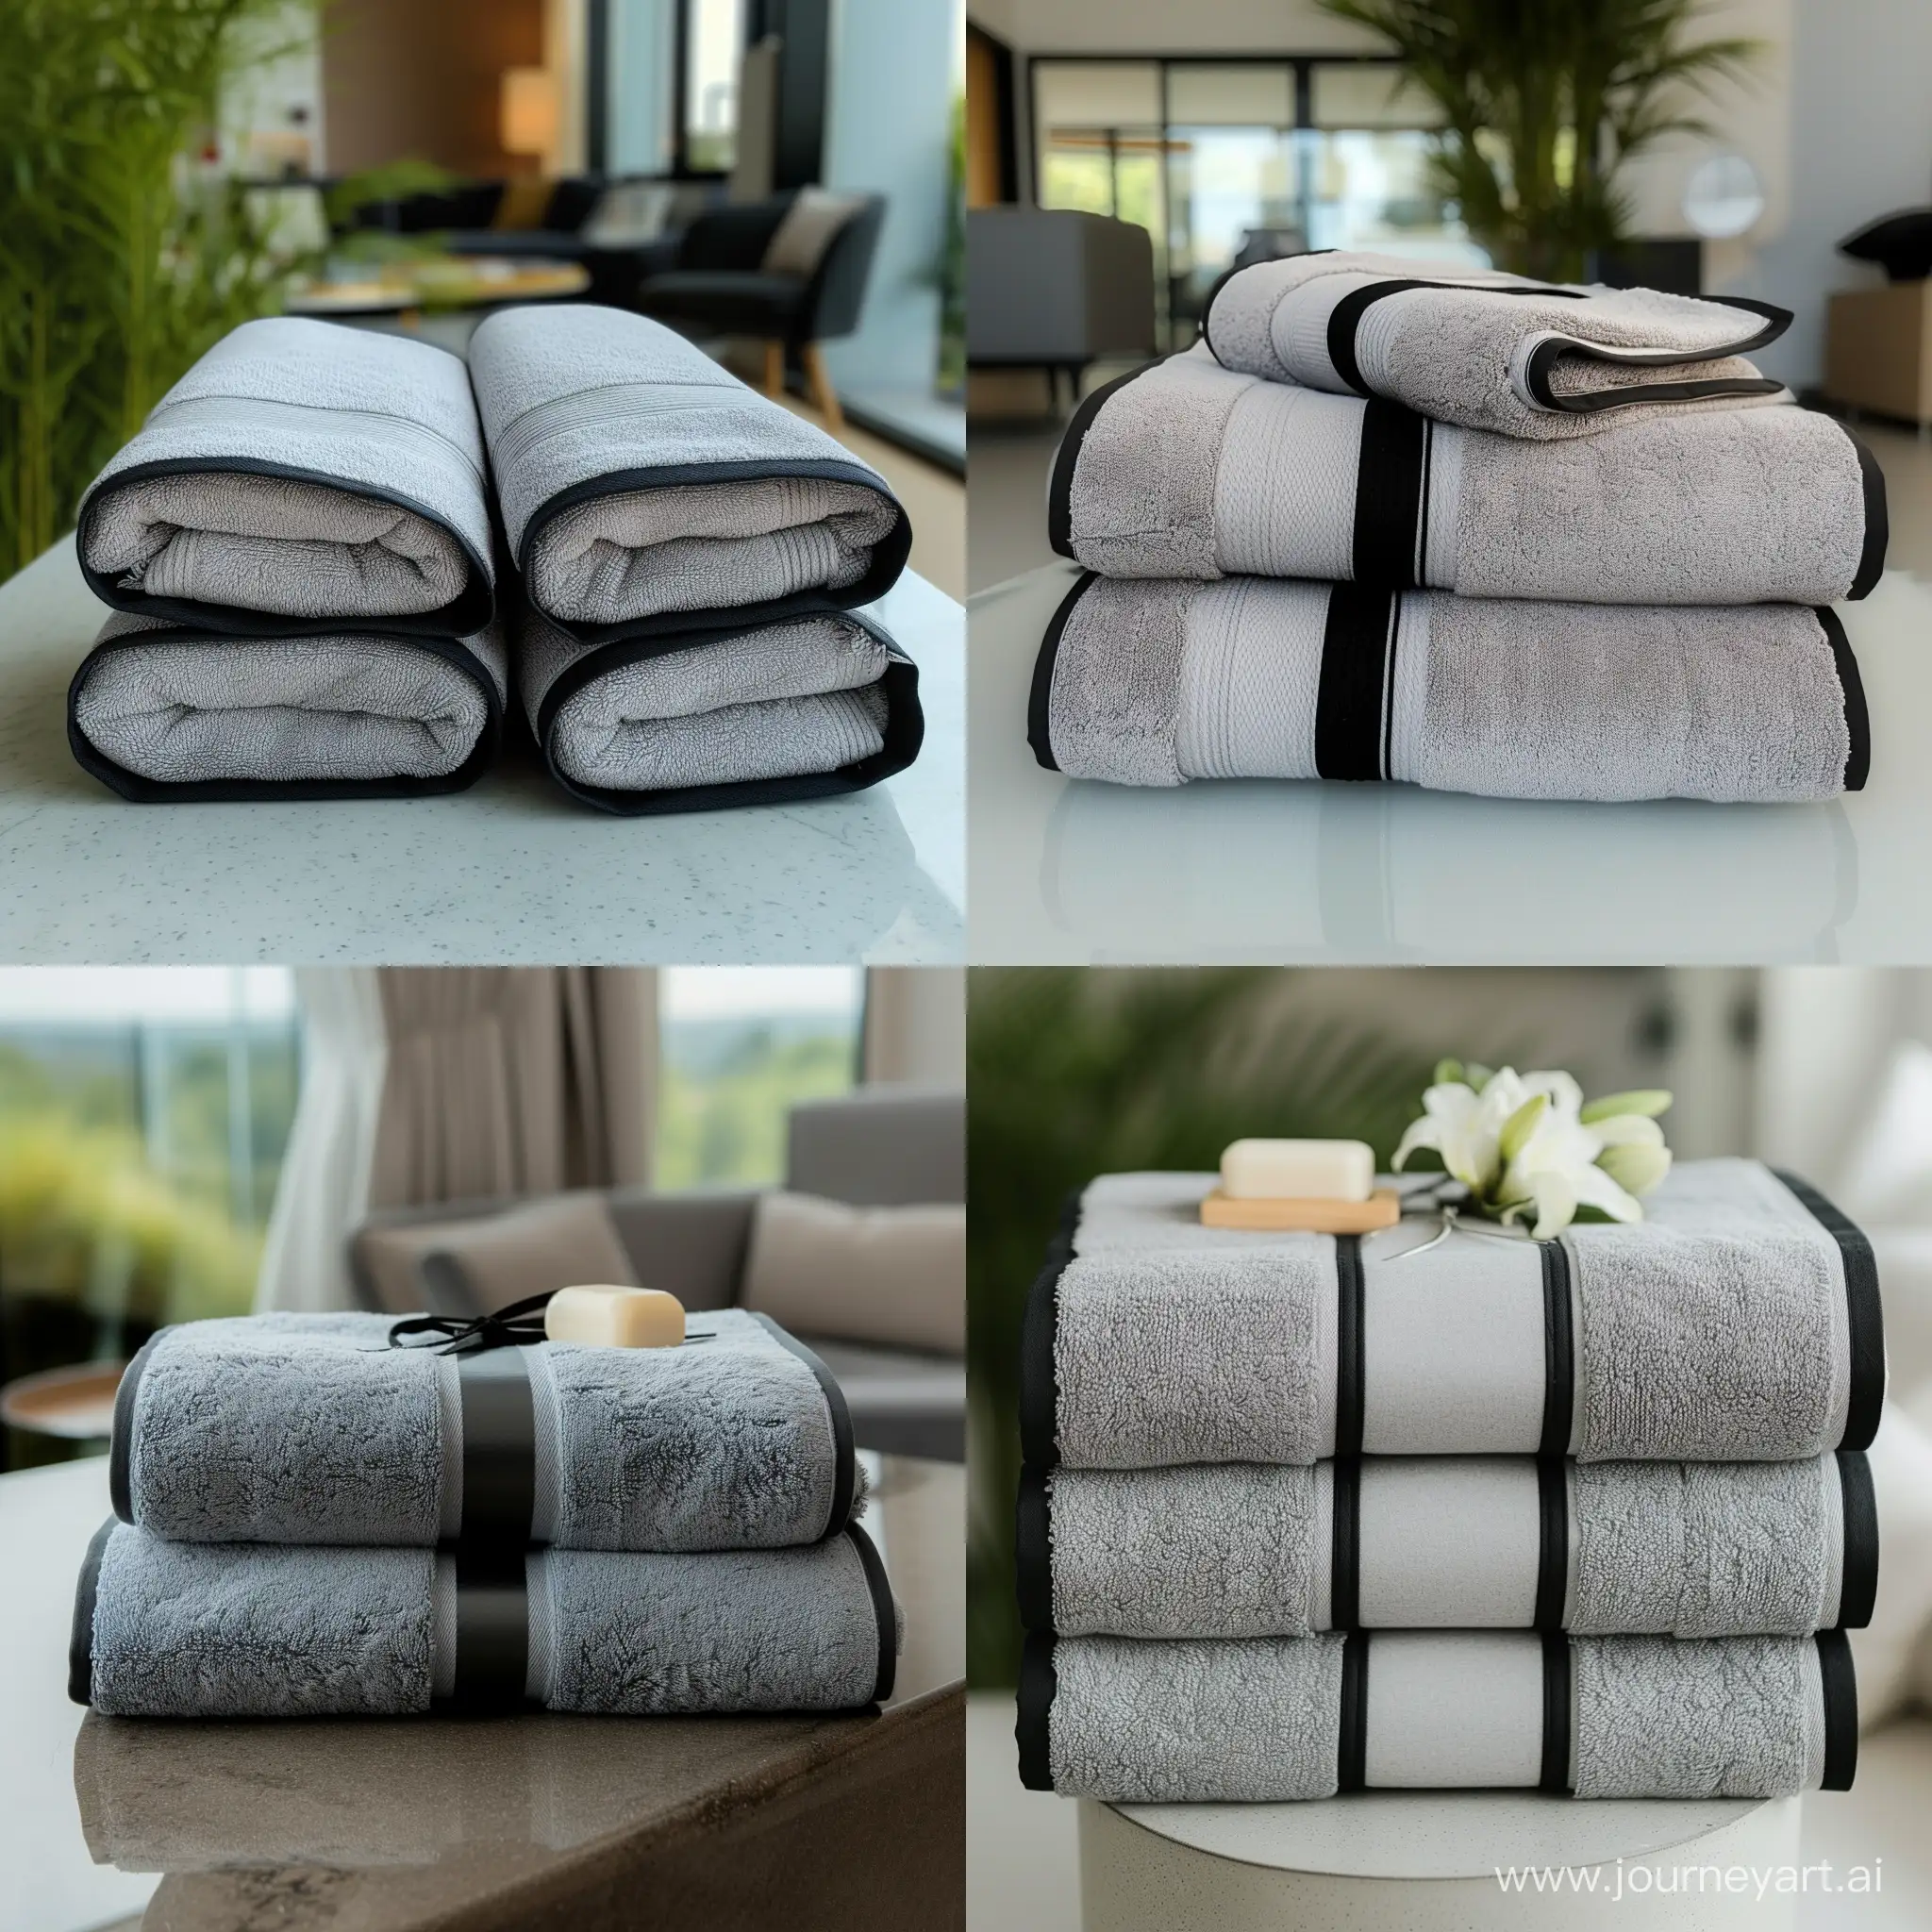 Покажи пару однотонных банных полотенца серого цвета с черными краями по всему периметру в красивой подарочной упаковке в стильной светлой дизайнерской квартире